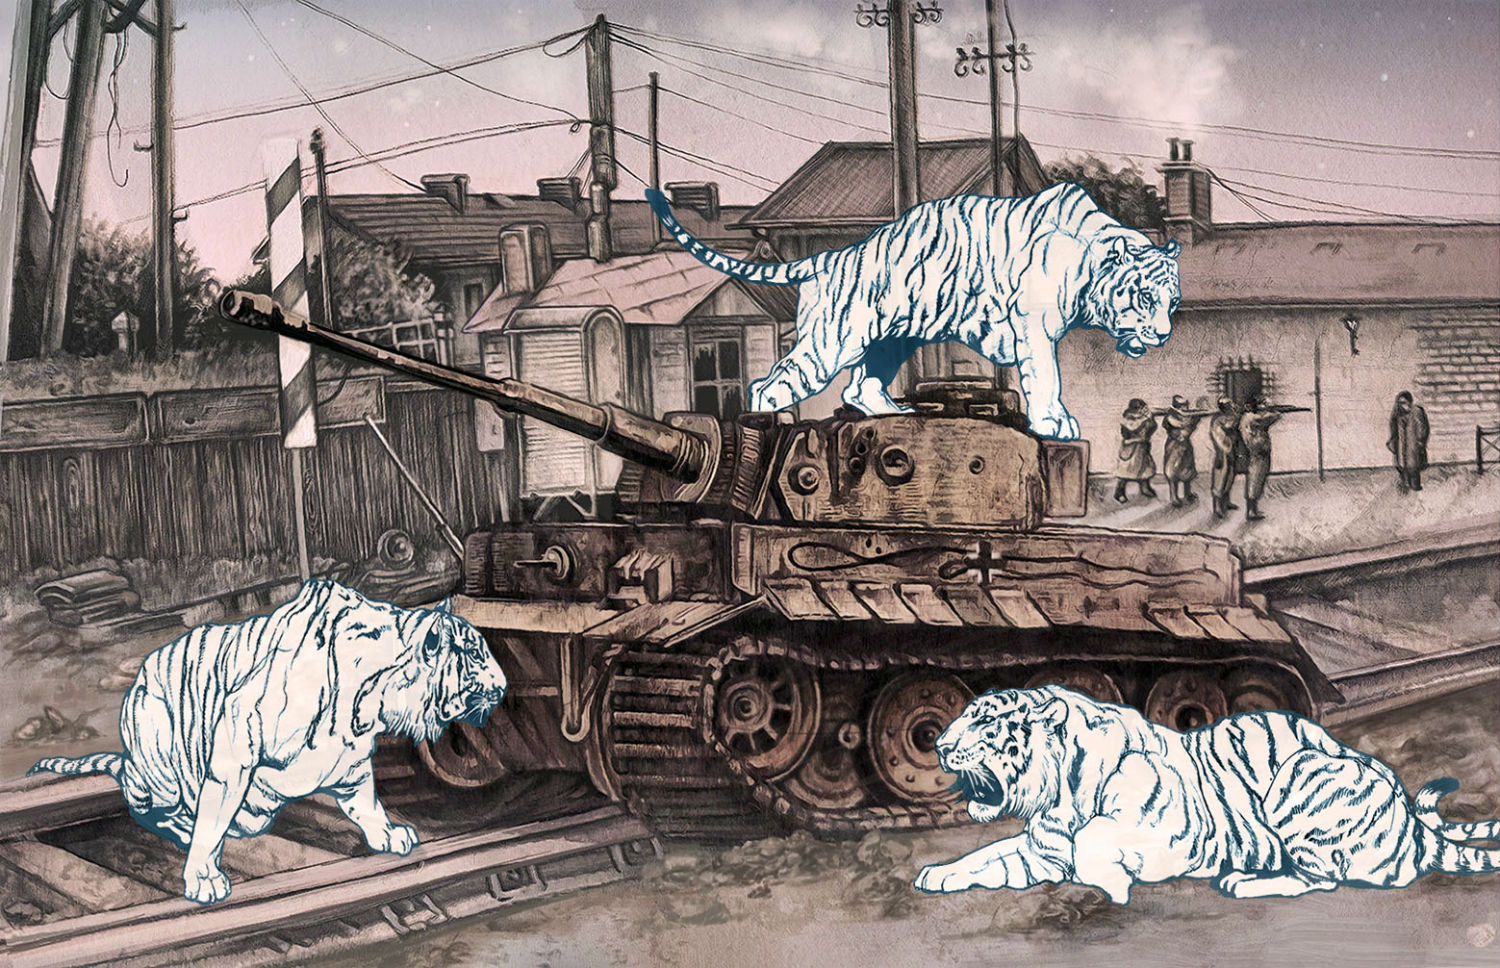 aj frena illustration animal tiger tanks